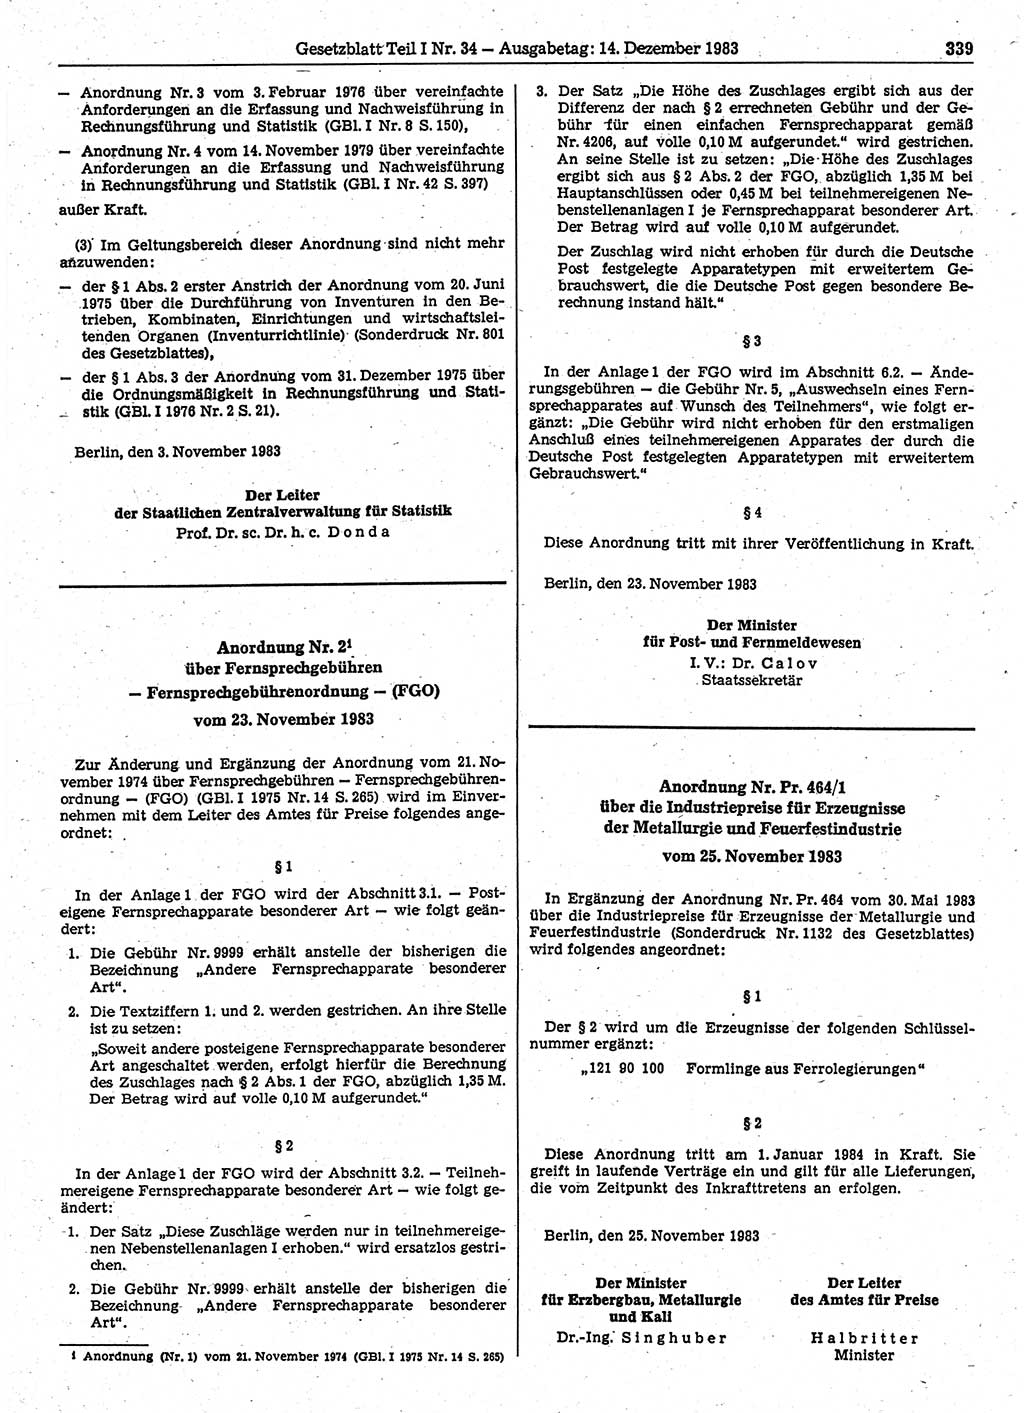 Gesetzblatt (GBl.) der Deutschen Demokratischen Republik (DDR) Teil Ⅰ 1983, Seite 339 (GBl. DDR Ⅰ 1983, S. 339)